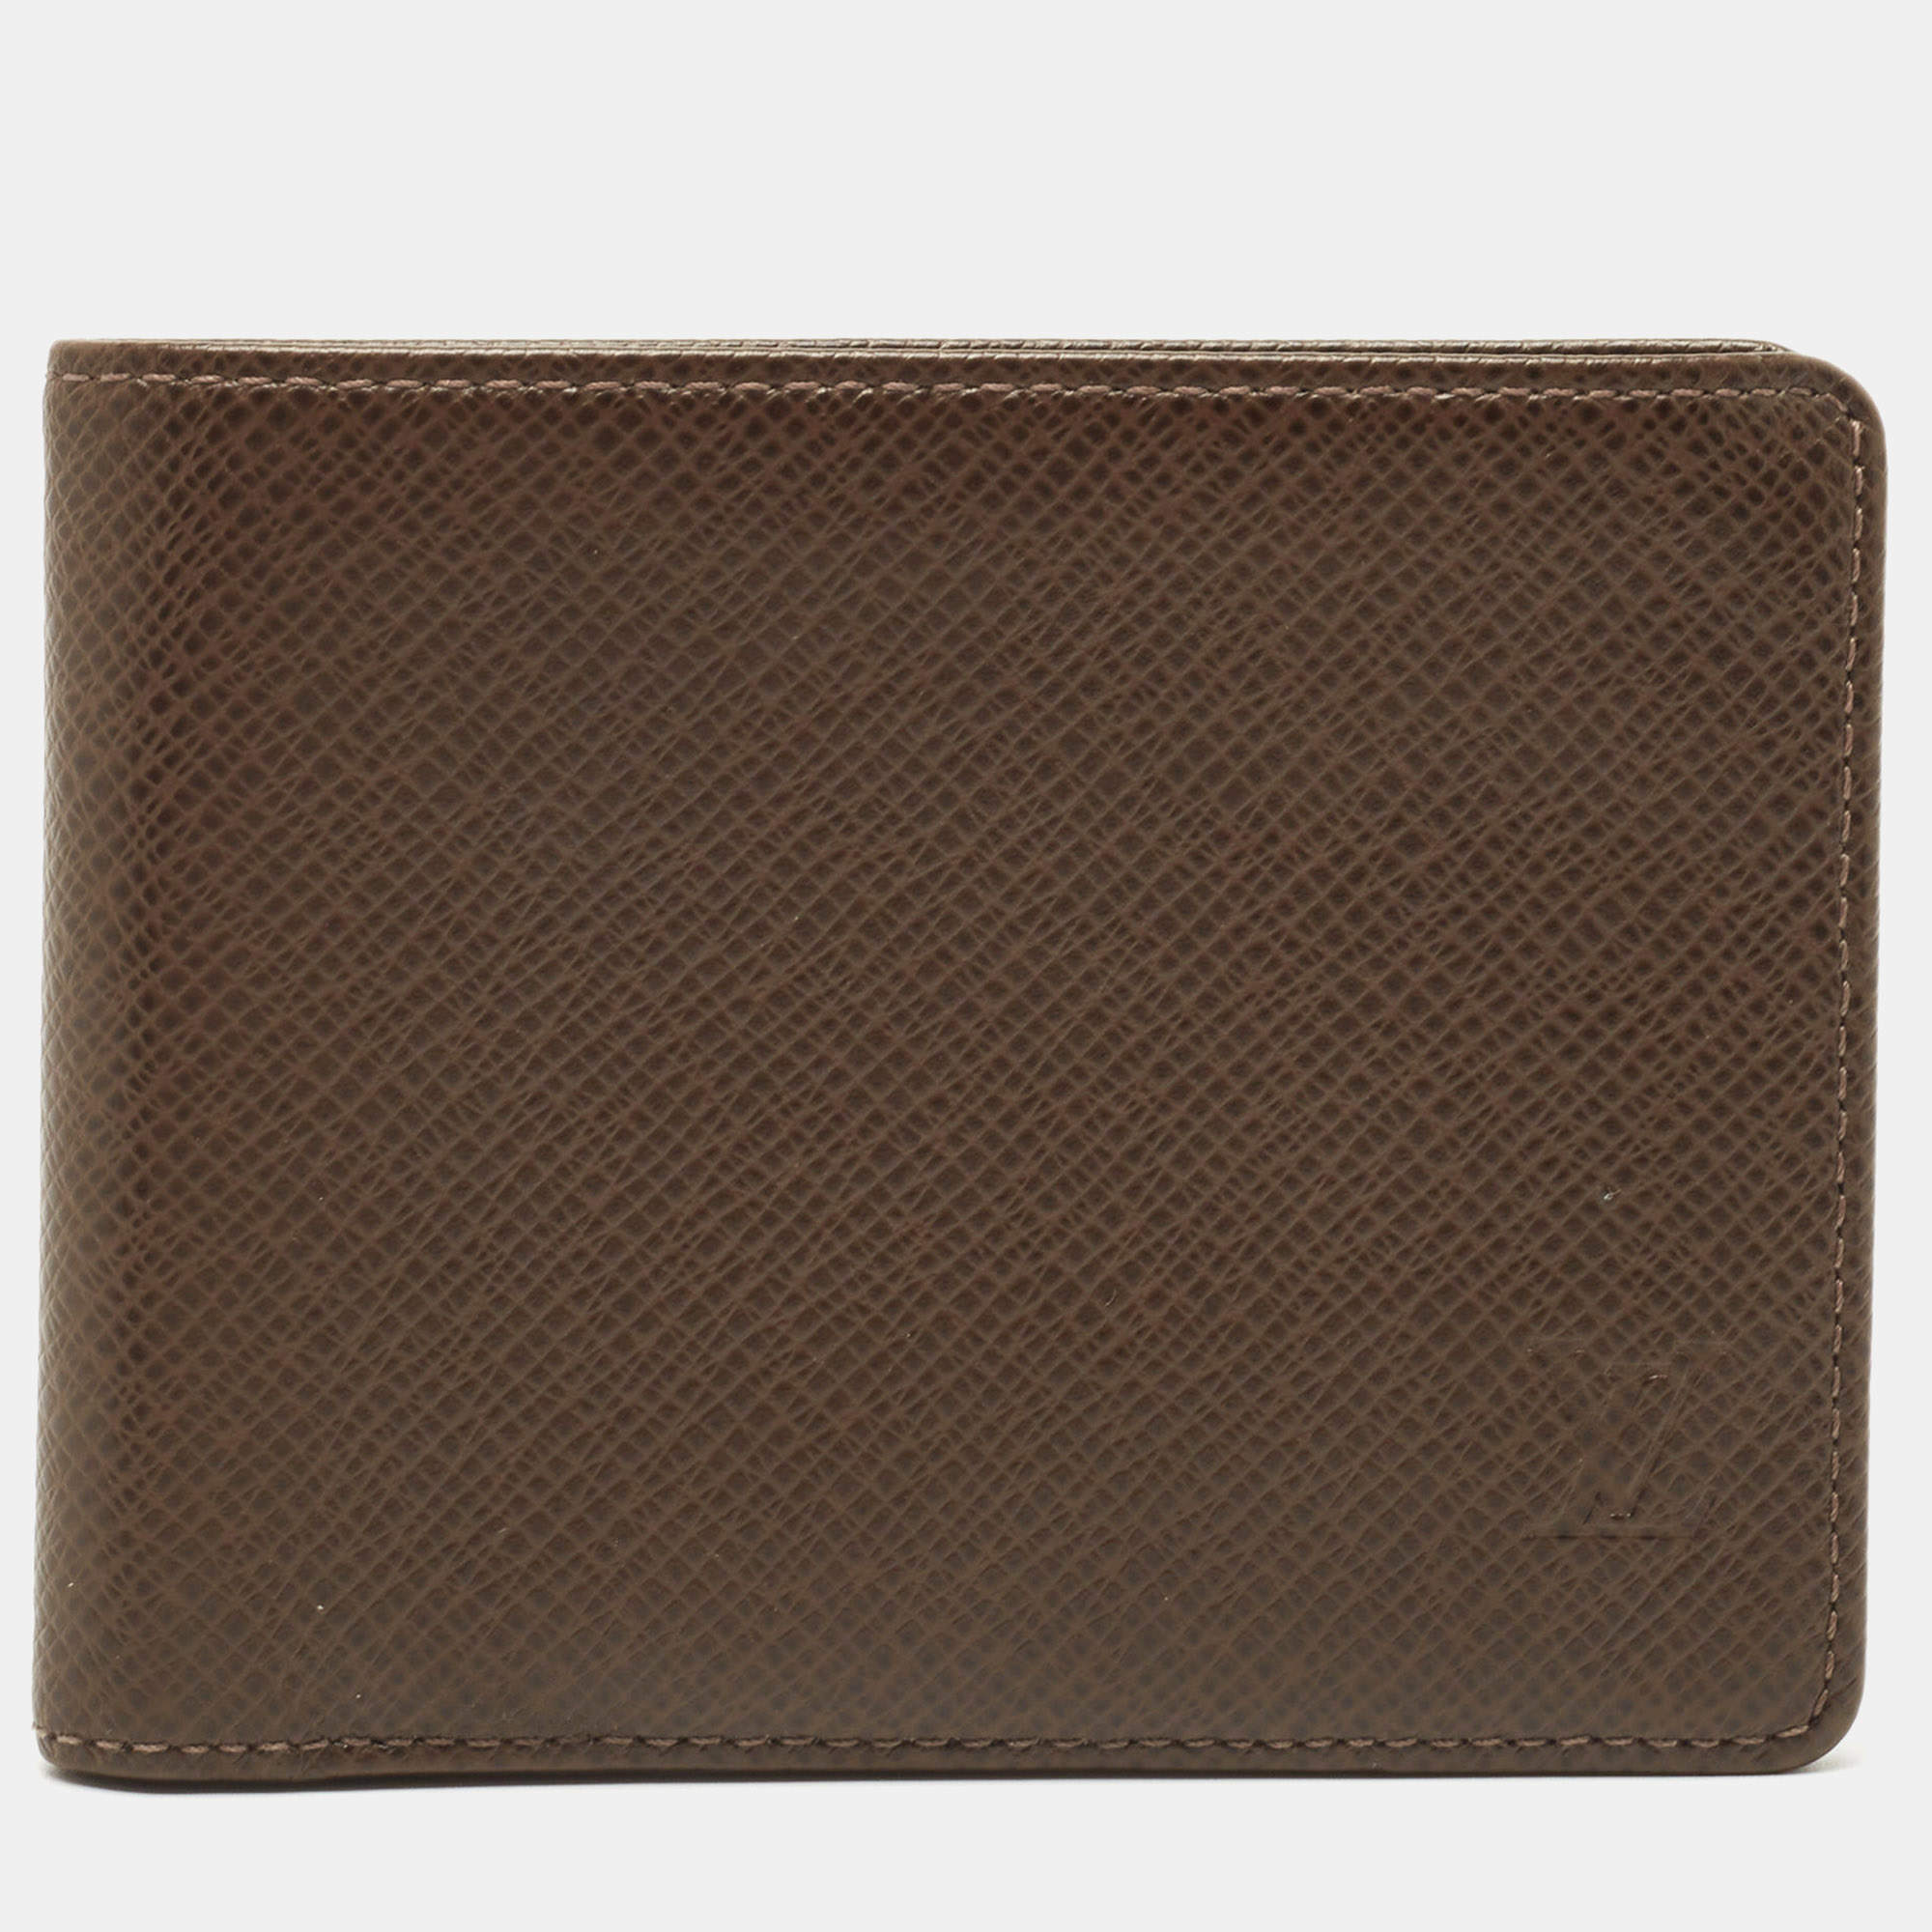 wallet lv purse